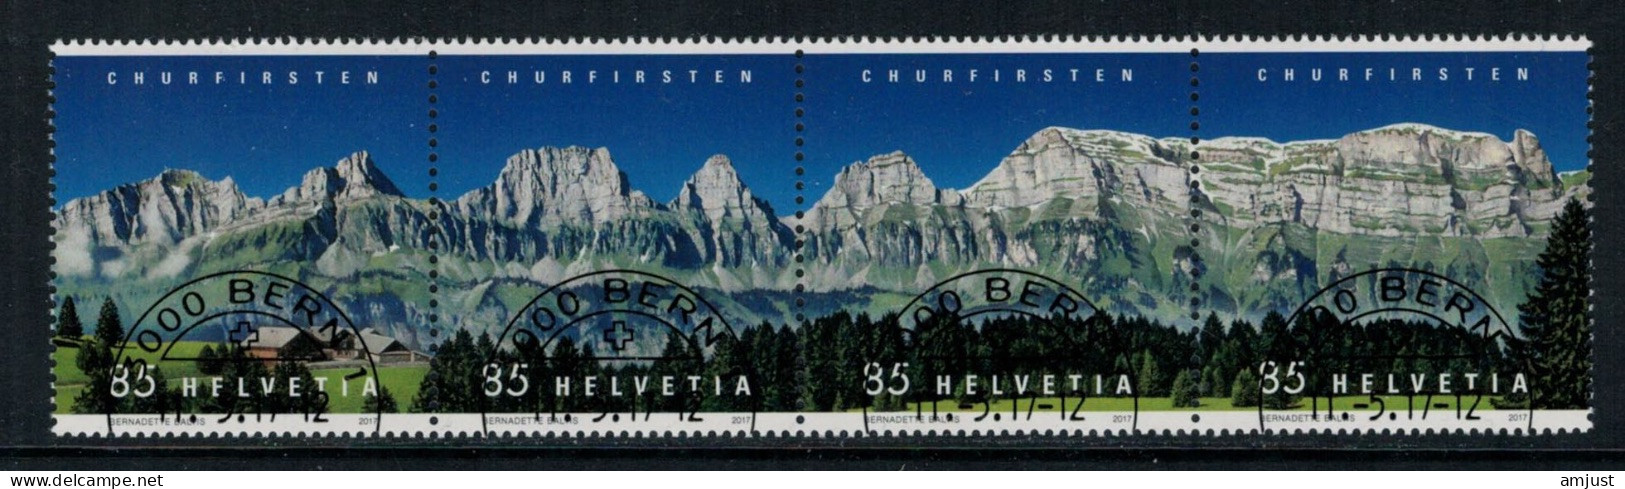 Suisse /Schweiz/Svizzera/Switzerland // 2017 // Churfirsten  Oblitéré No. 1631-1634 - Usados